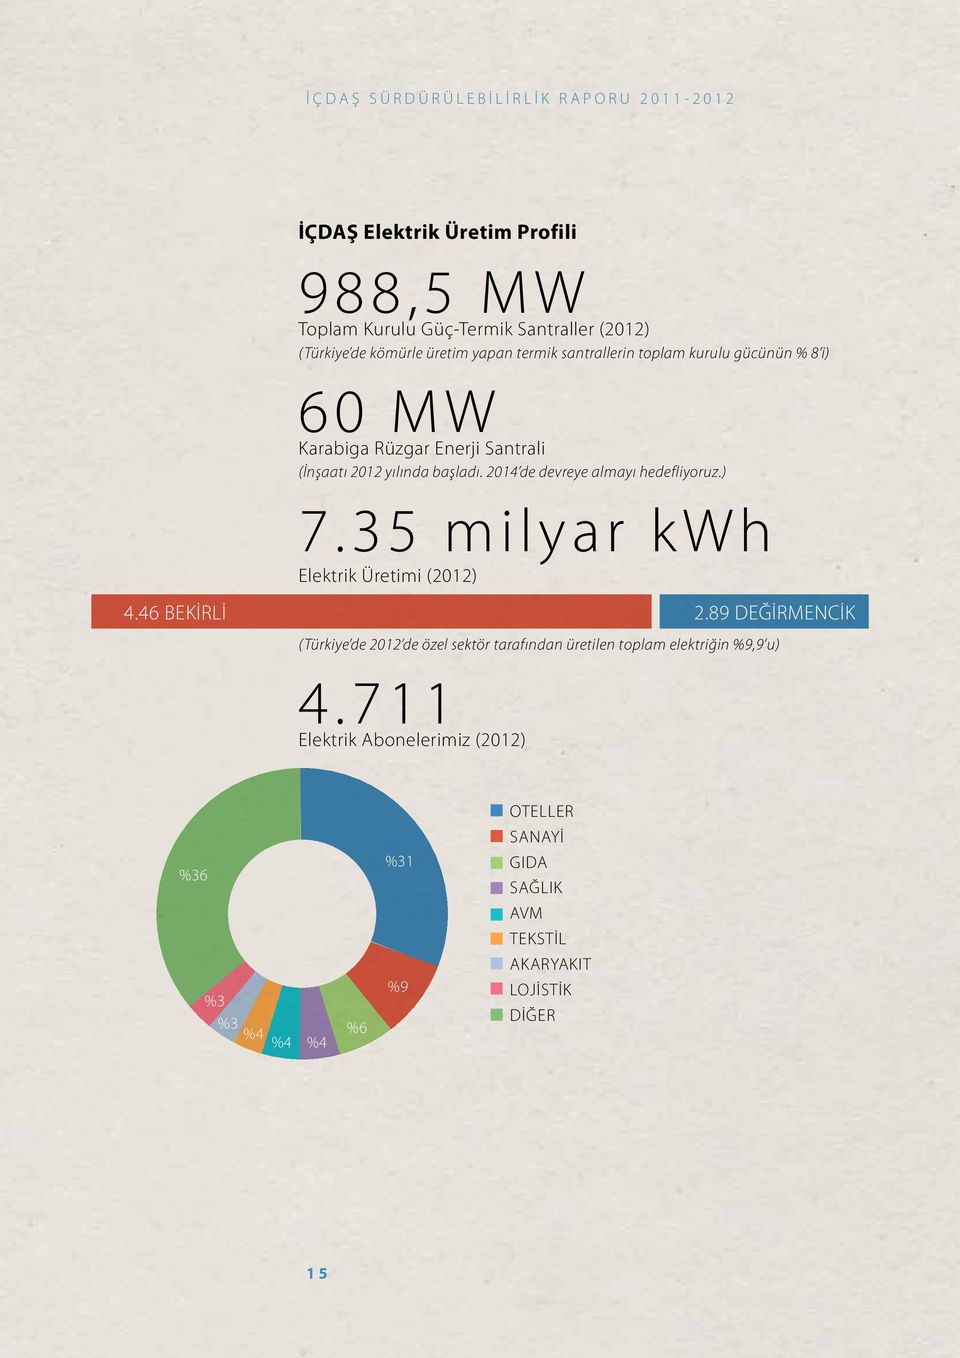 2014 de devreye almayı hedefliyoruz.) 7.35 milyar kwh Elektrik Üretimi (2012) 4.46 BEKİRLİ 2.